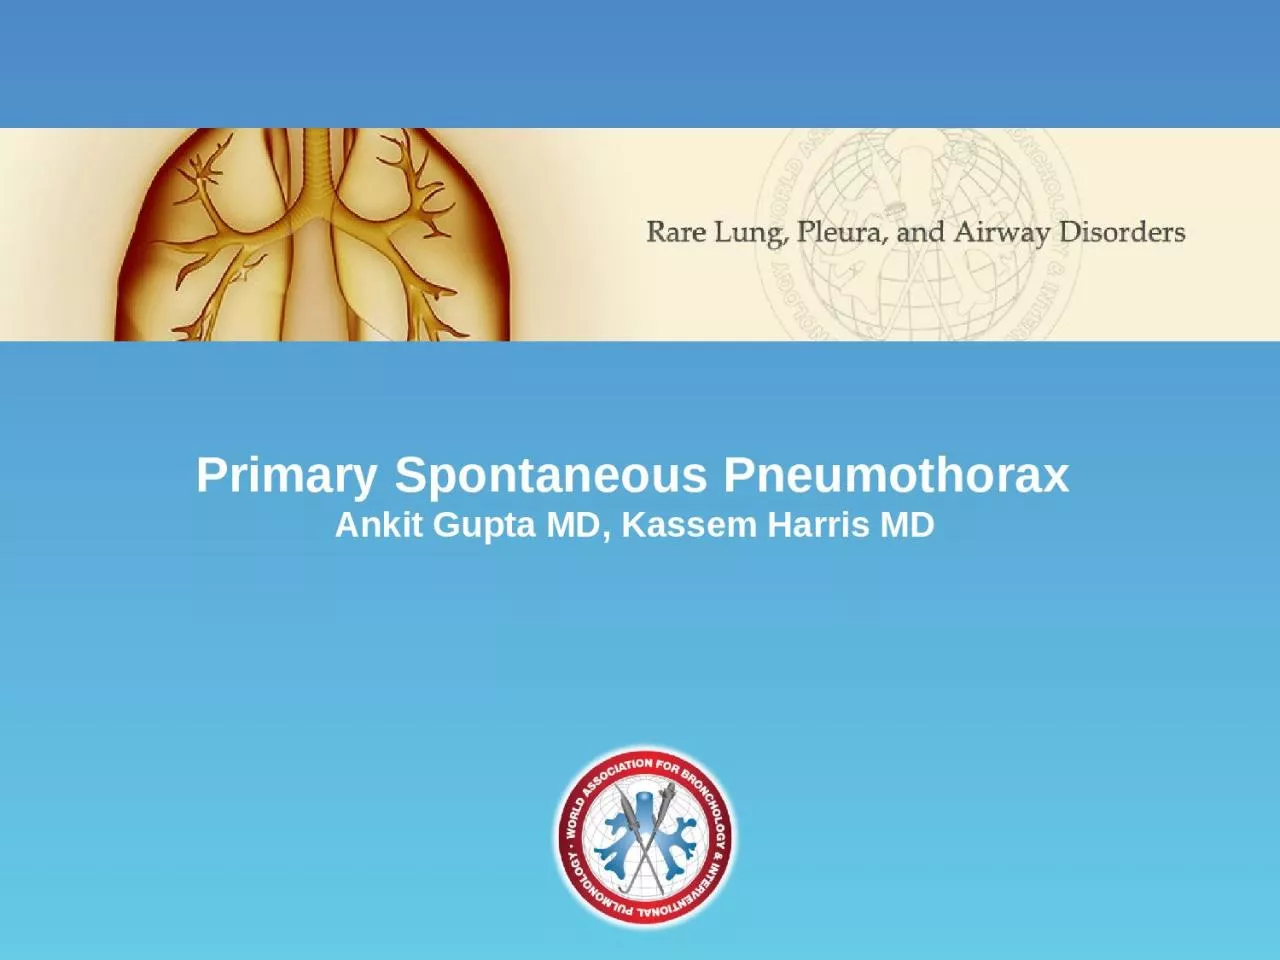 Primary Spontaneous Pneumothorax